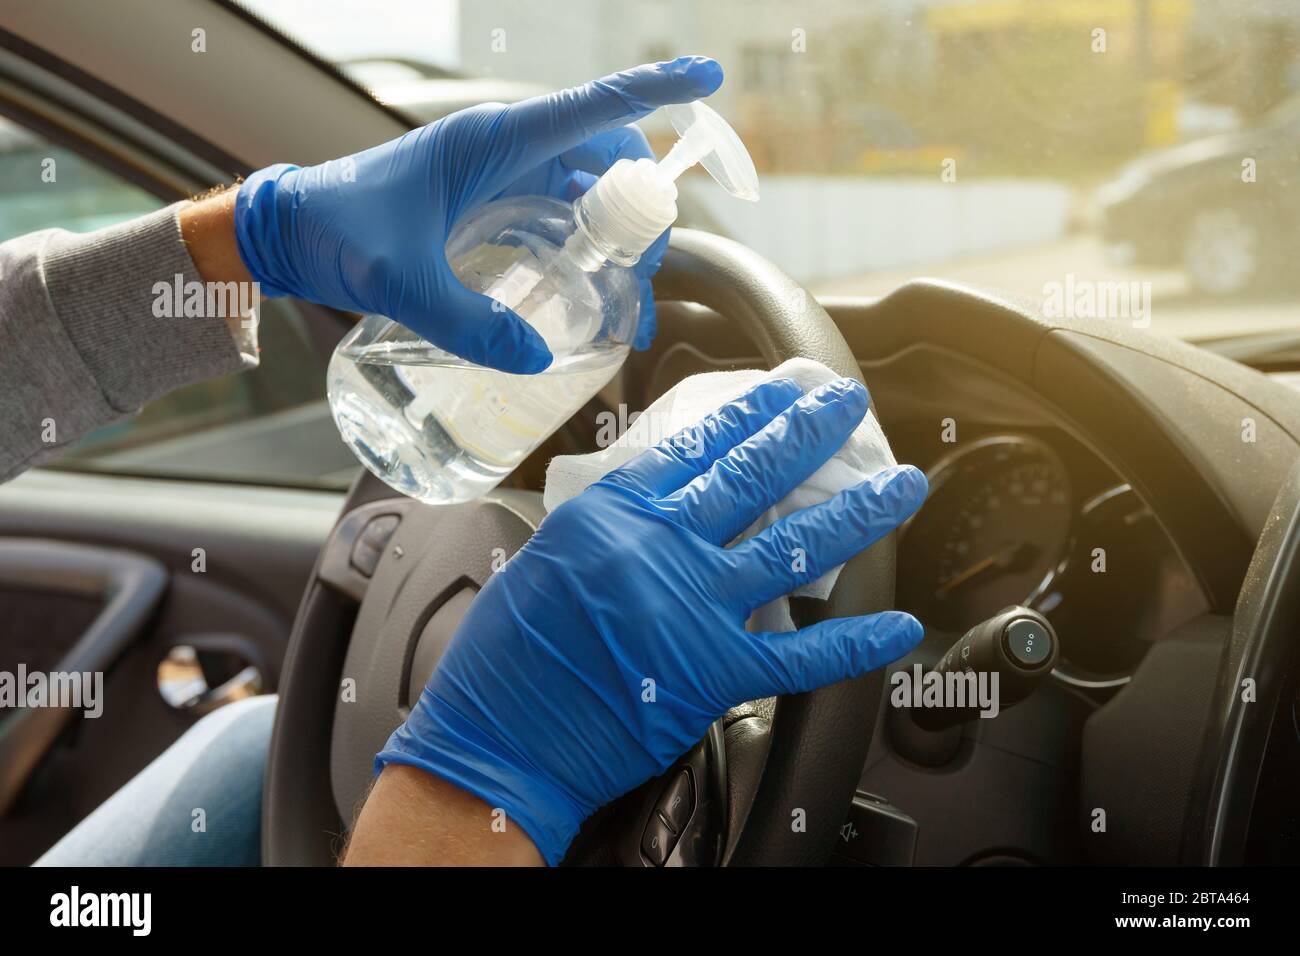 Désinfection automobile. Un homme en gants et un masque essuie le volant avec un chiffon désinfectant. Banque D'Images